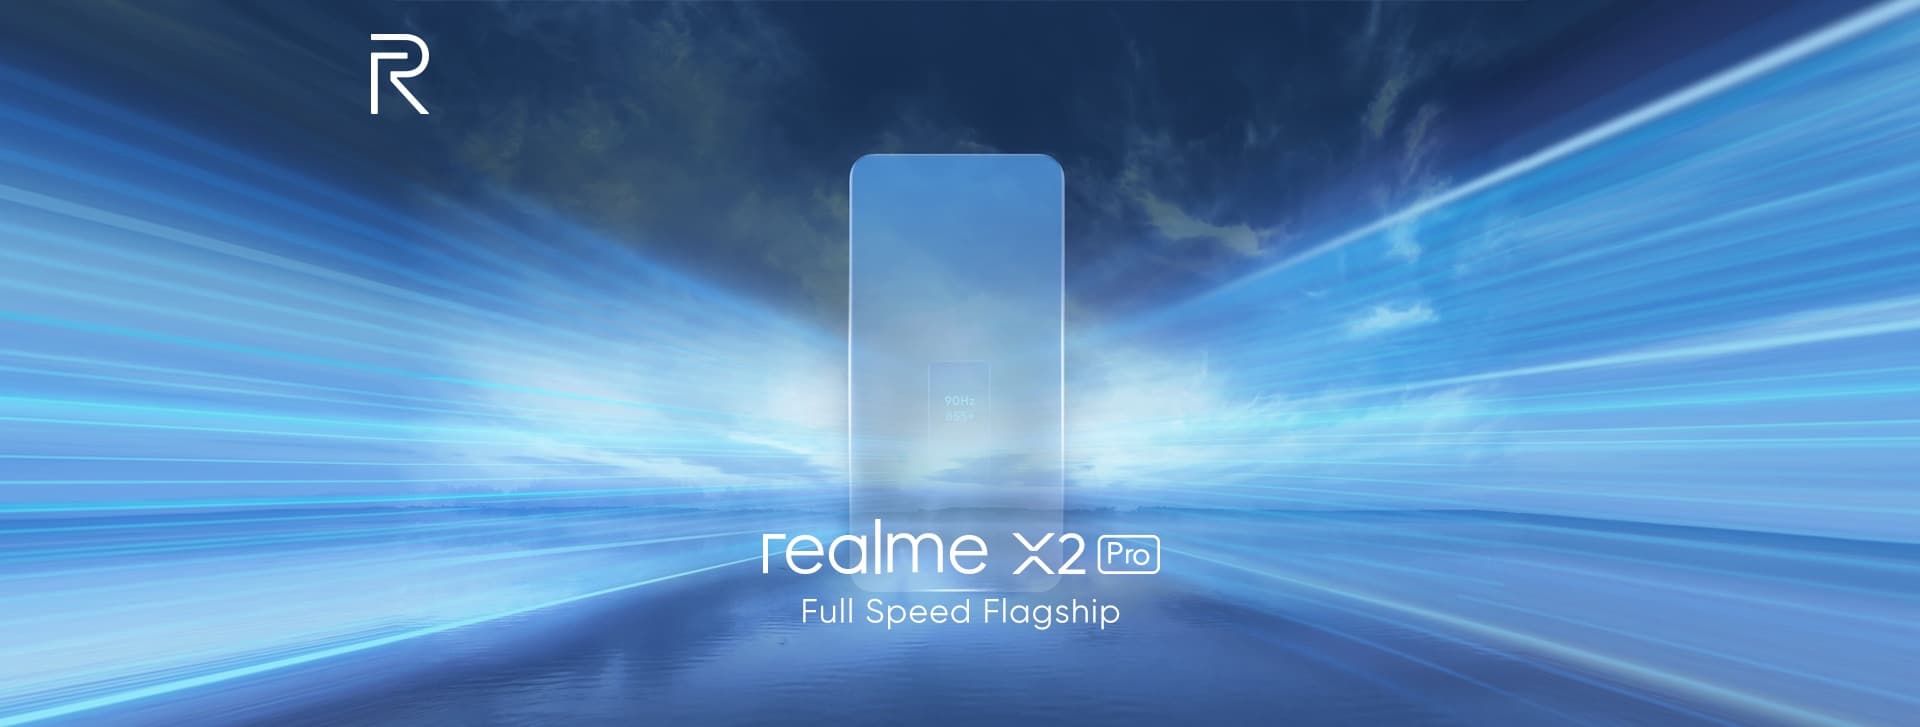 Tease du Realme X2 Pro par la marque